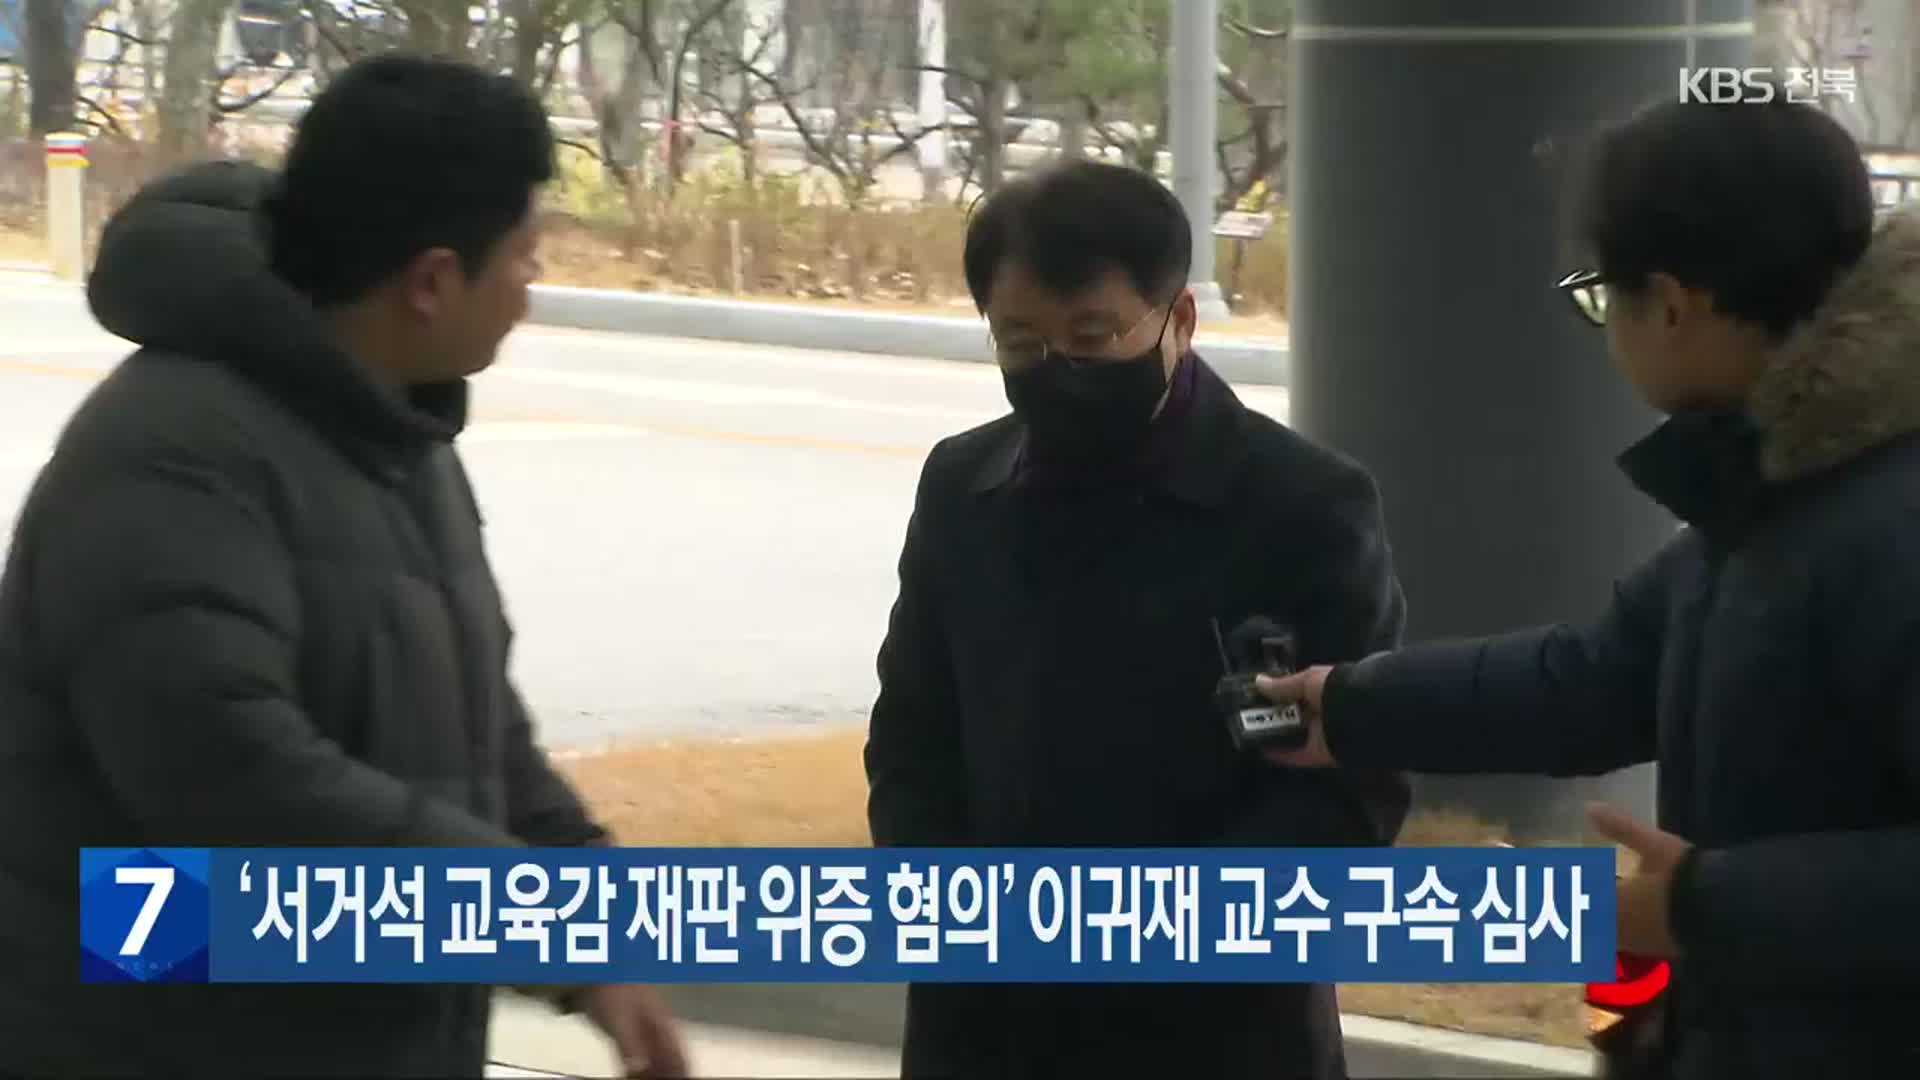 ‘서거석 교육감 재판 위증 혐의’ 이귀재 교수 구속 심사